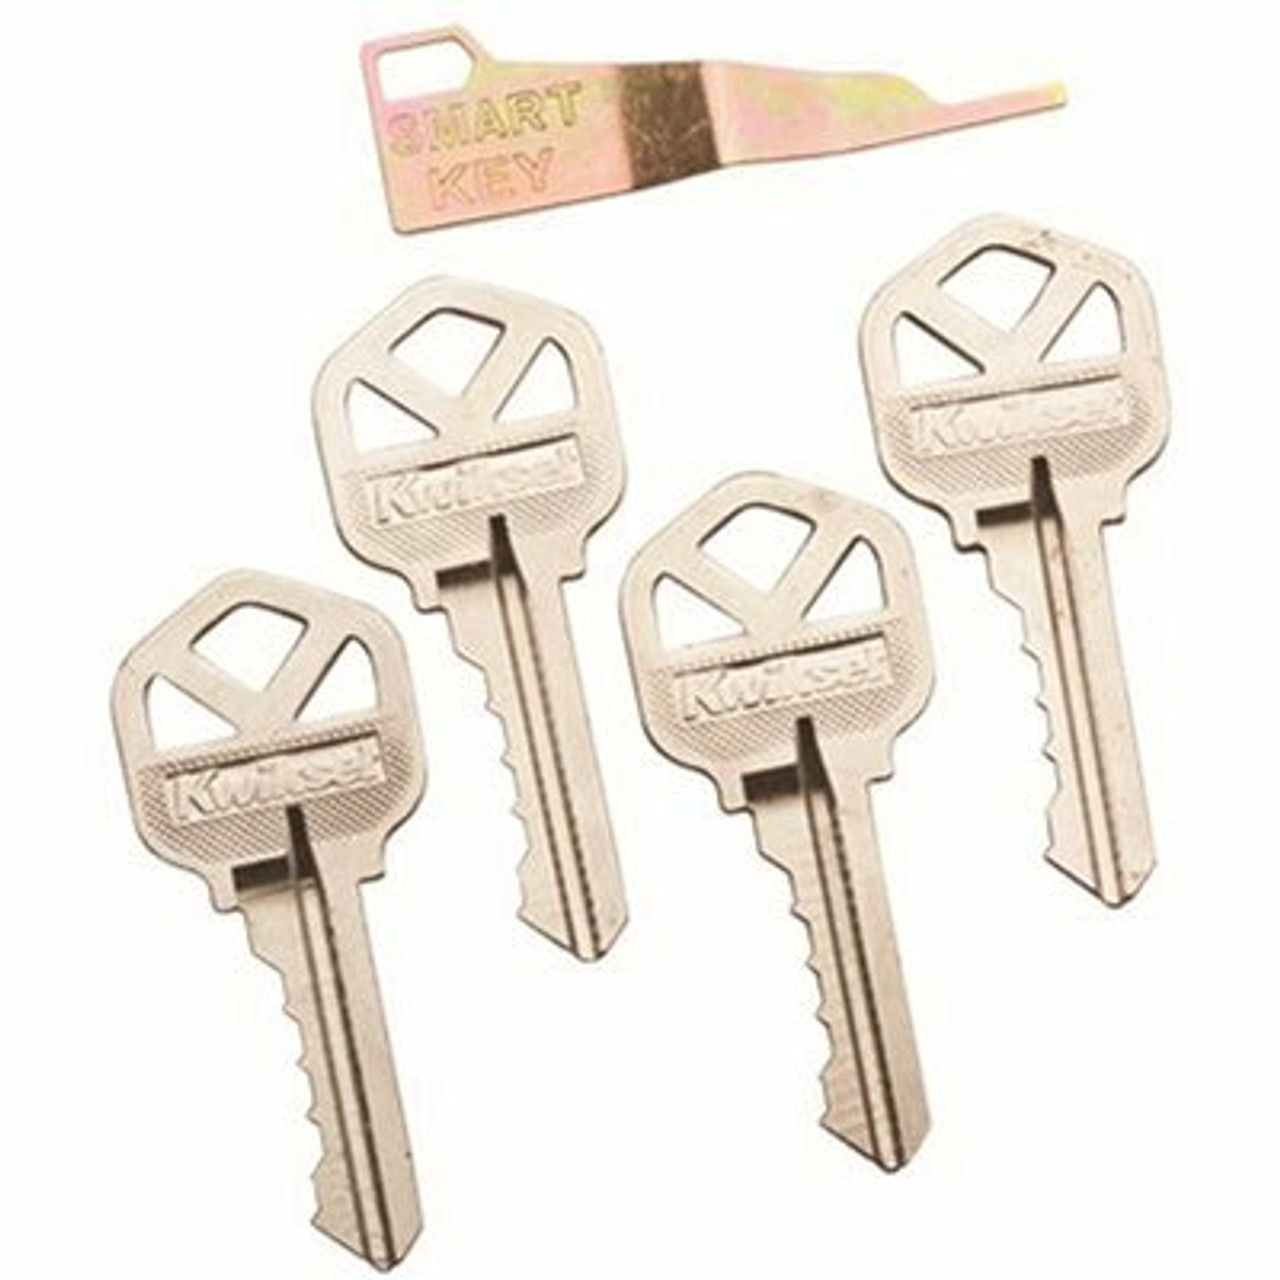 Kwikset Smartkey Security 4 Cut Keys With Re-Key Tool